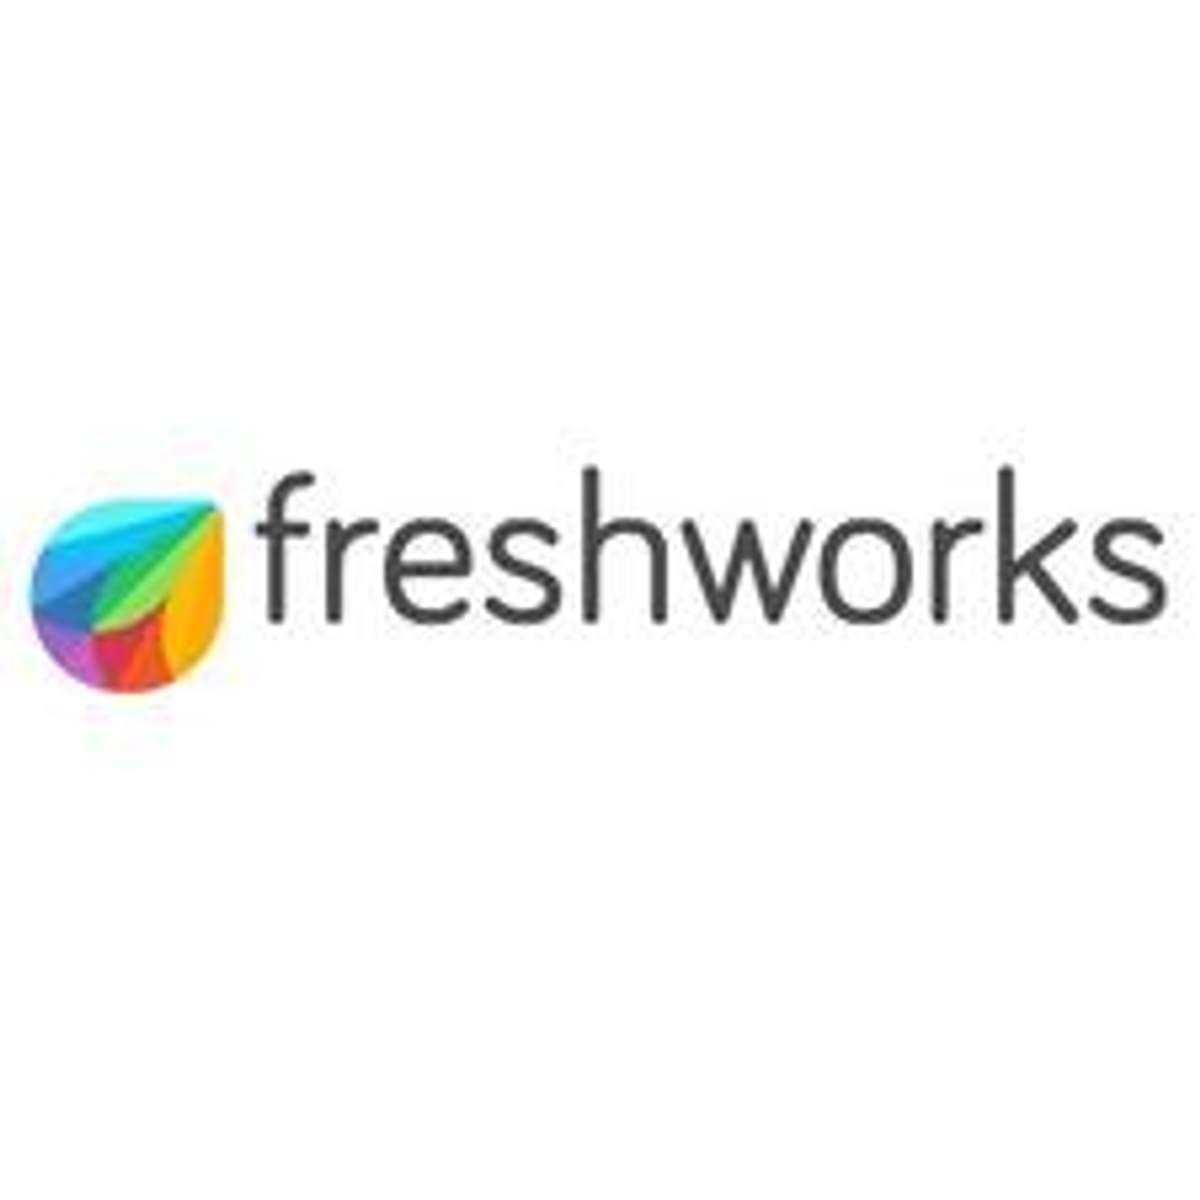 Freshworks haalt miljoenen dollars op image